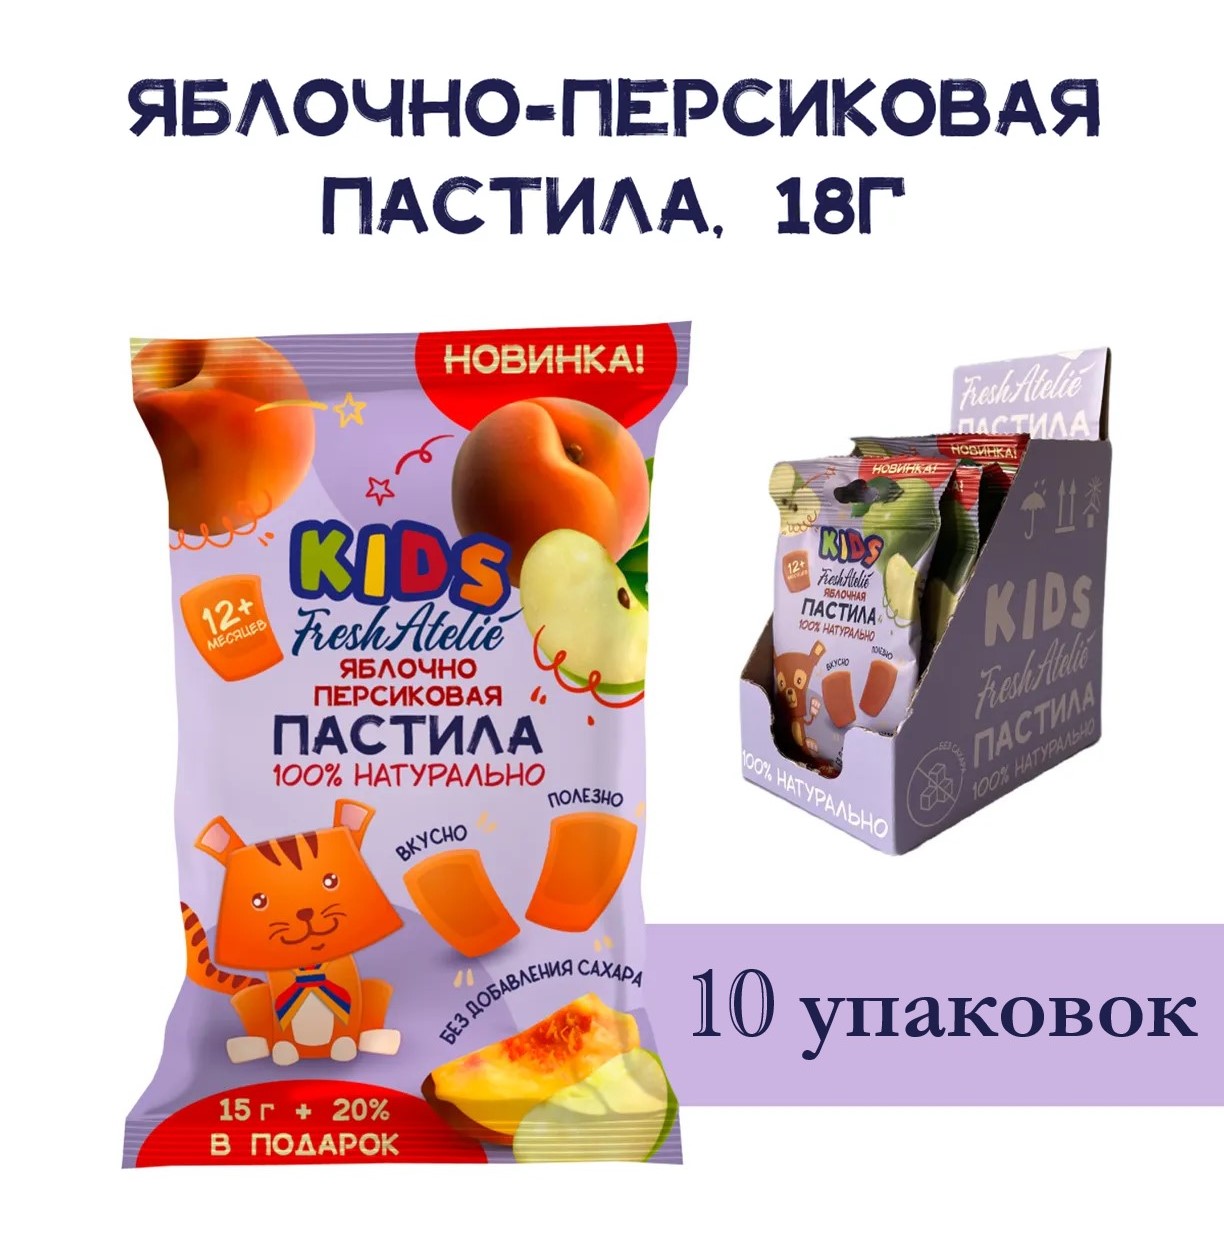 Пастила Яблочно-Персиковая для детей FRESH ATELIE KIDS Пастилки 15гр+20%, 10 упаковок